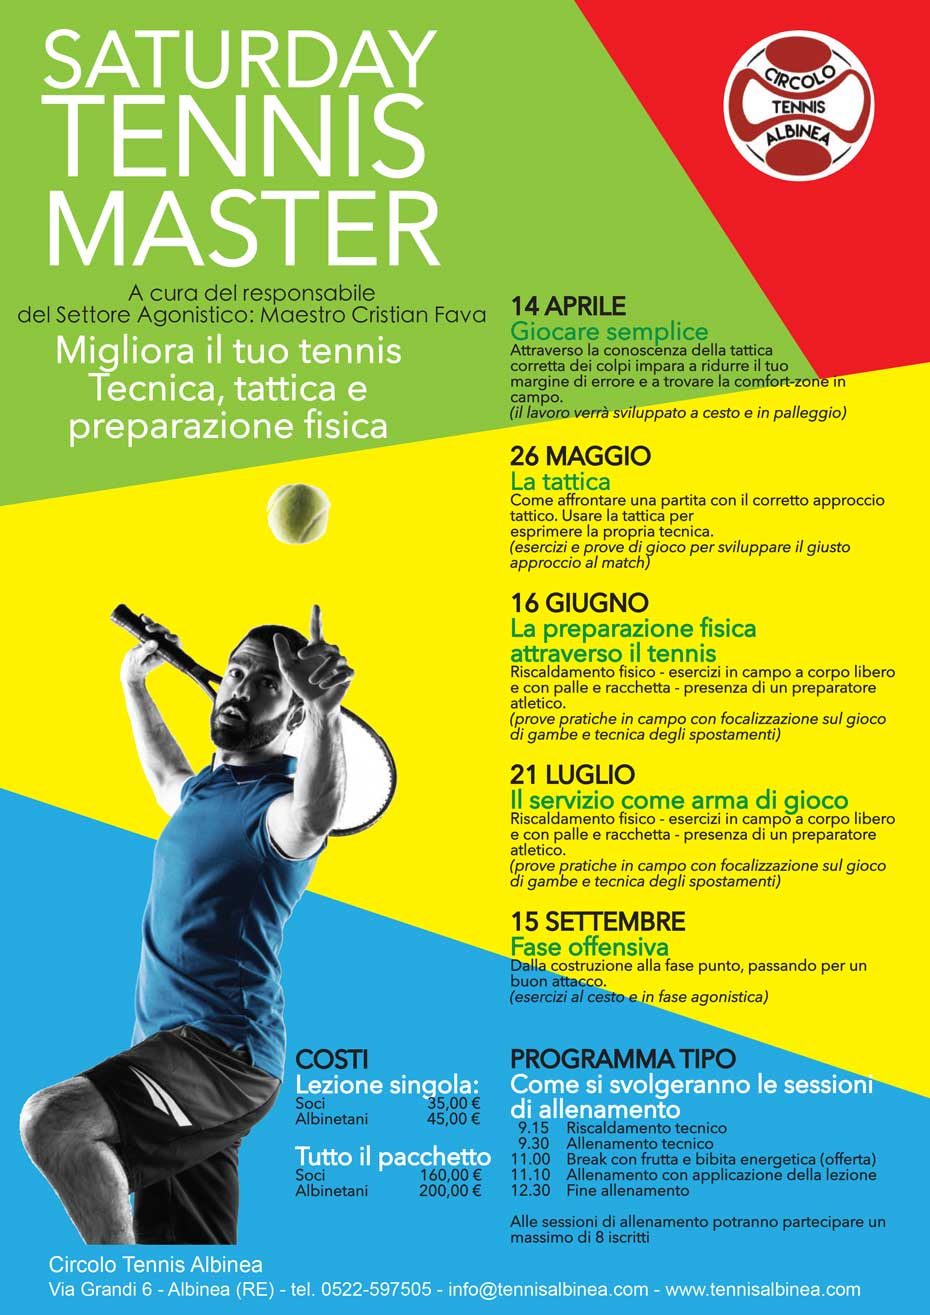 saturday master tennis al CIrcolo Tennis Albinea